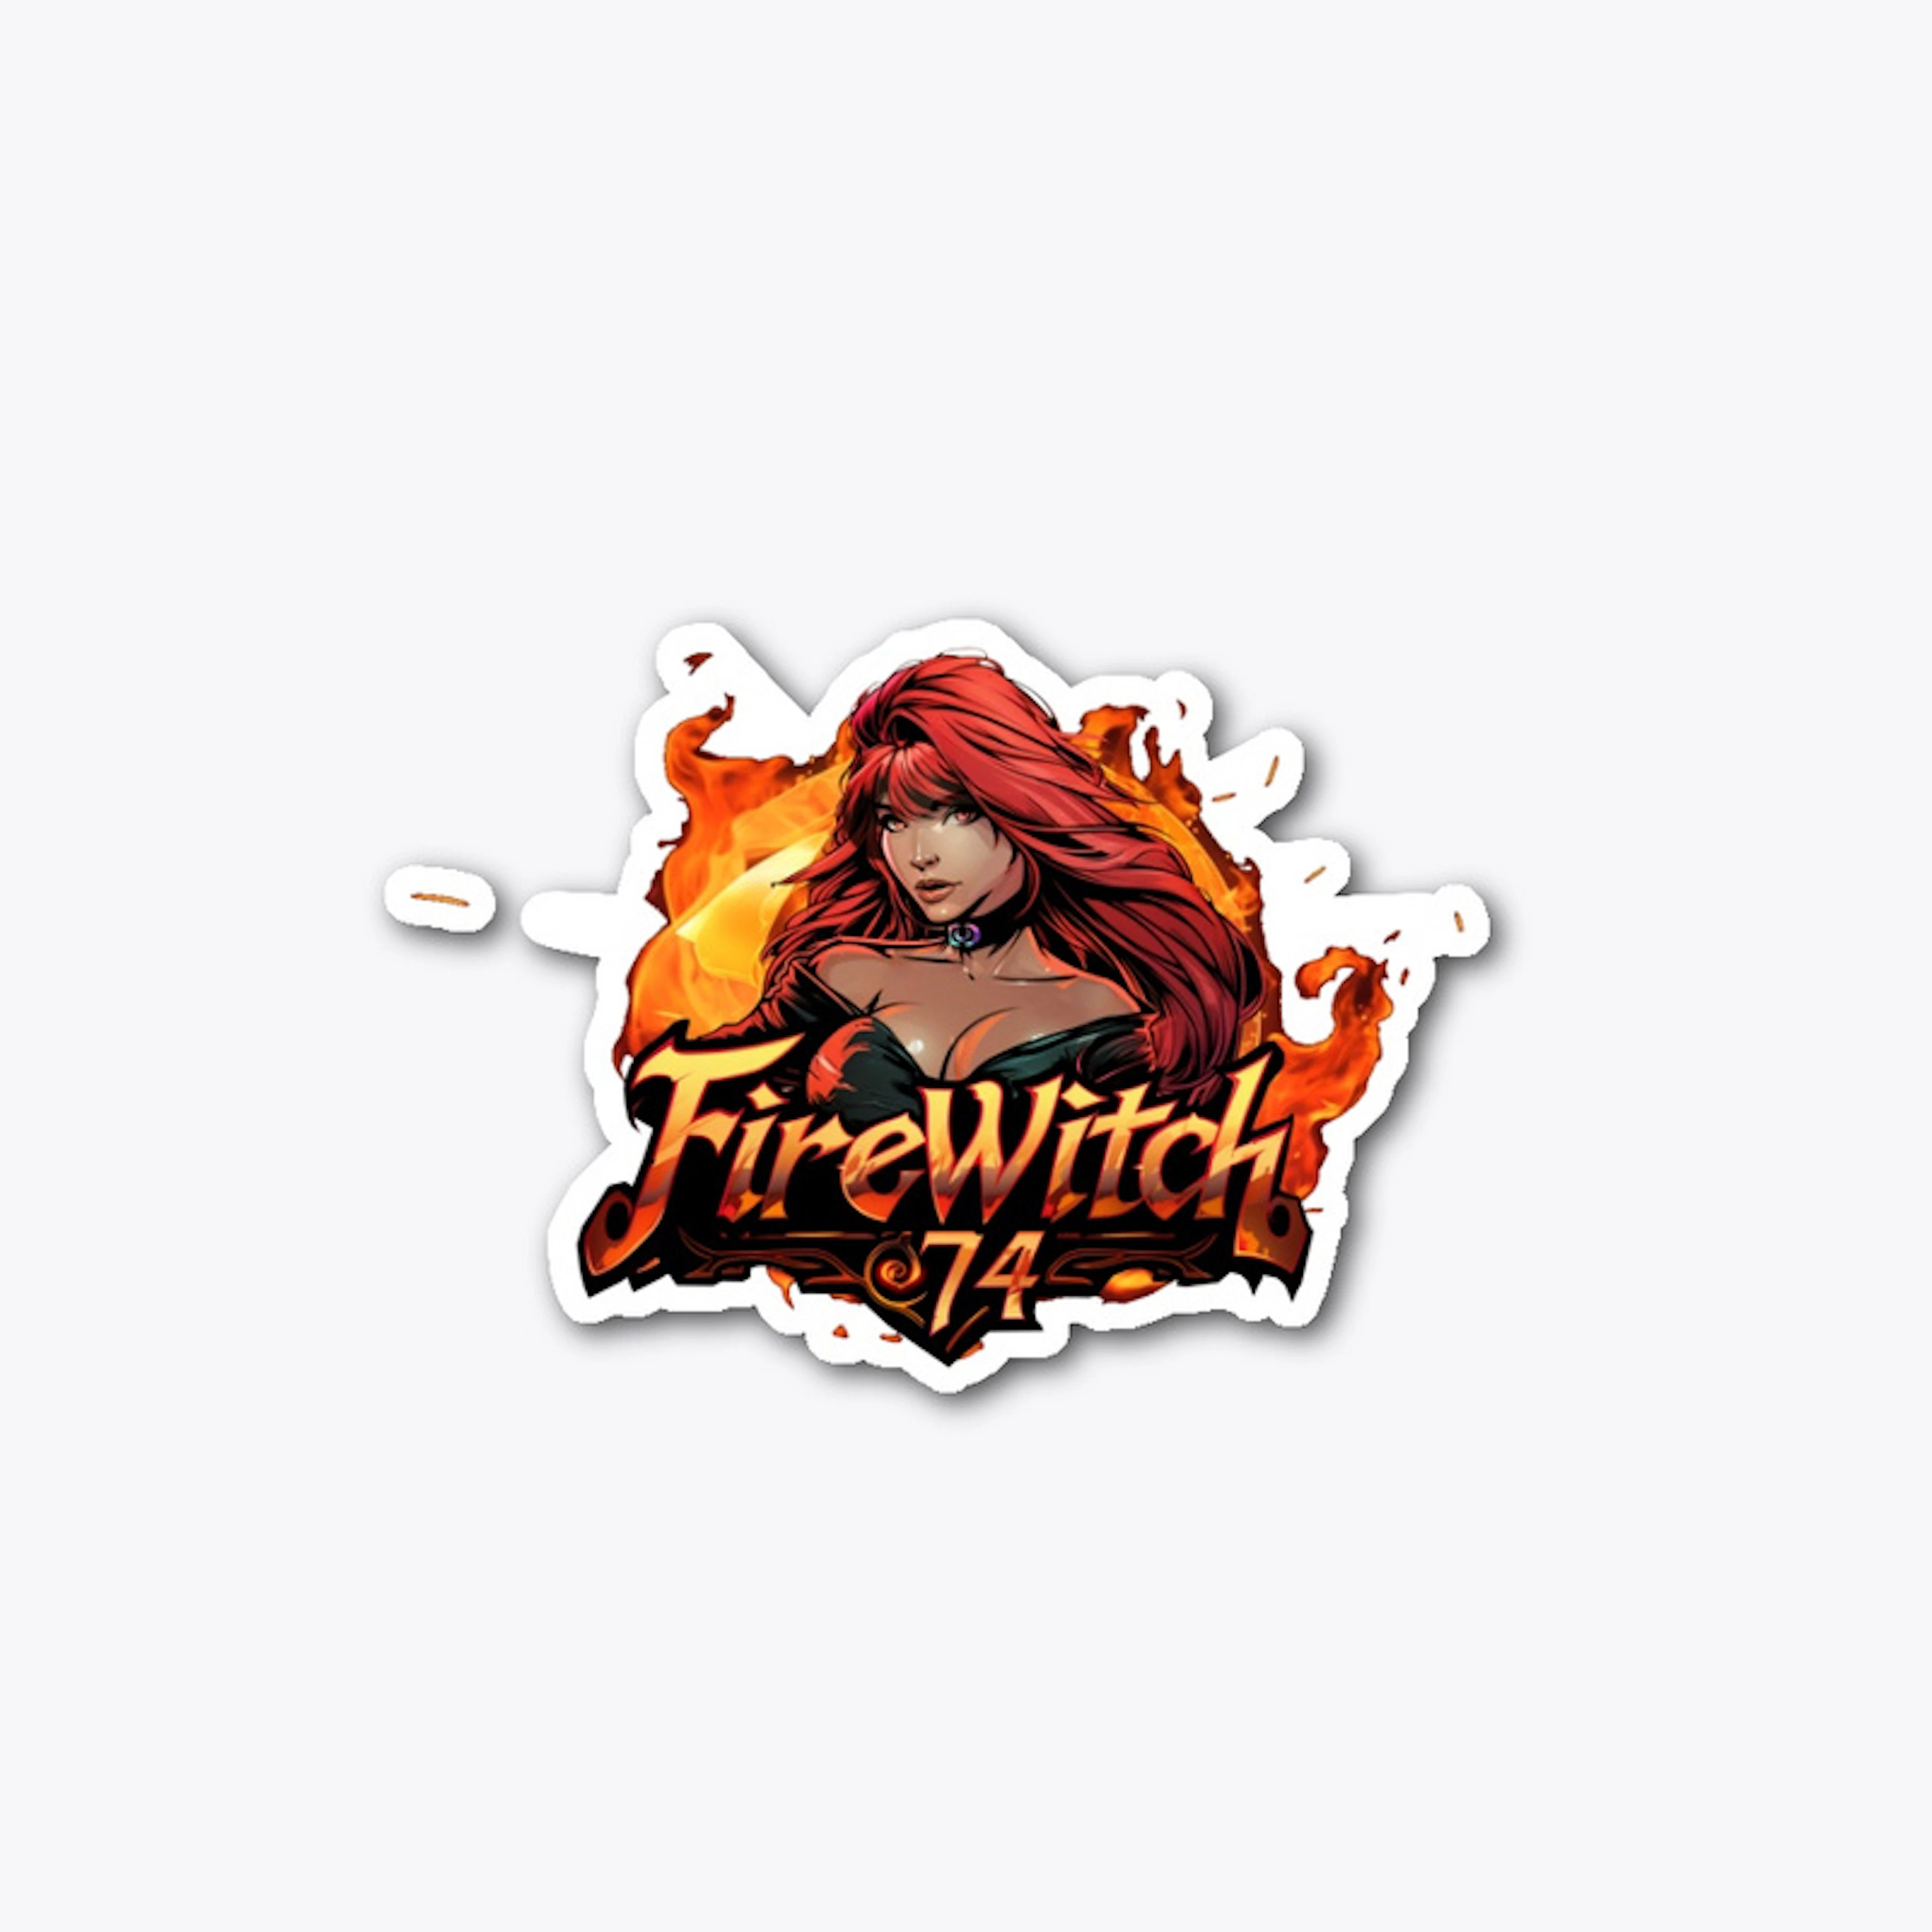 Firewitch74 Logo